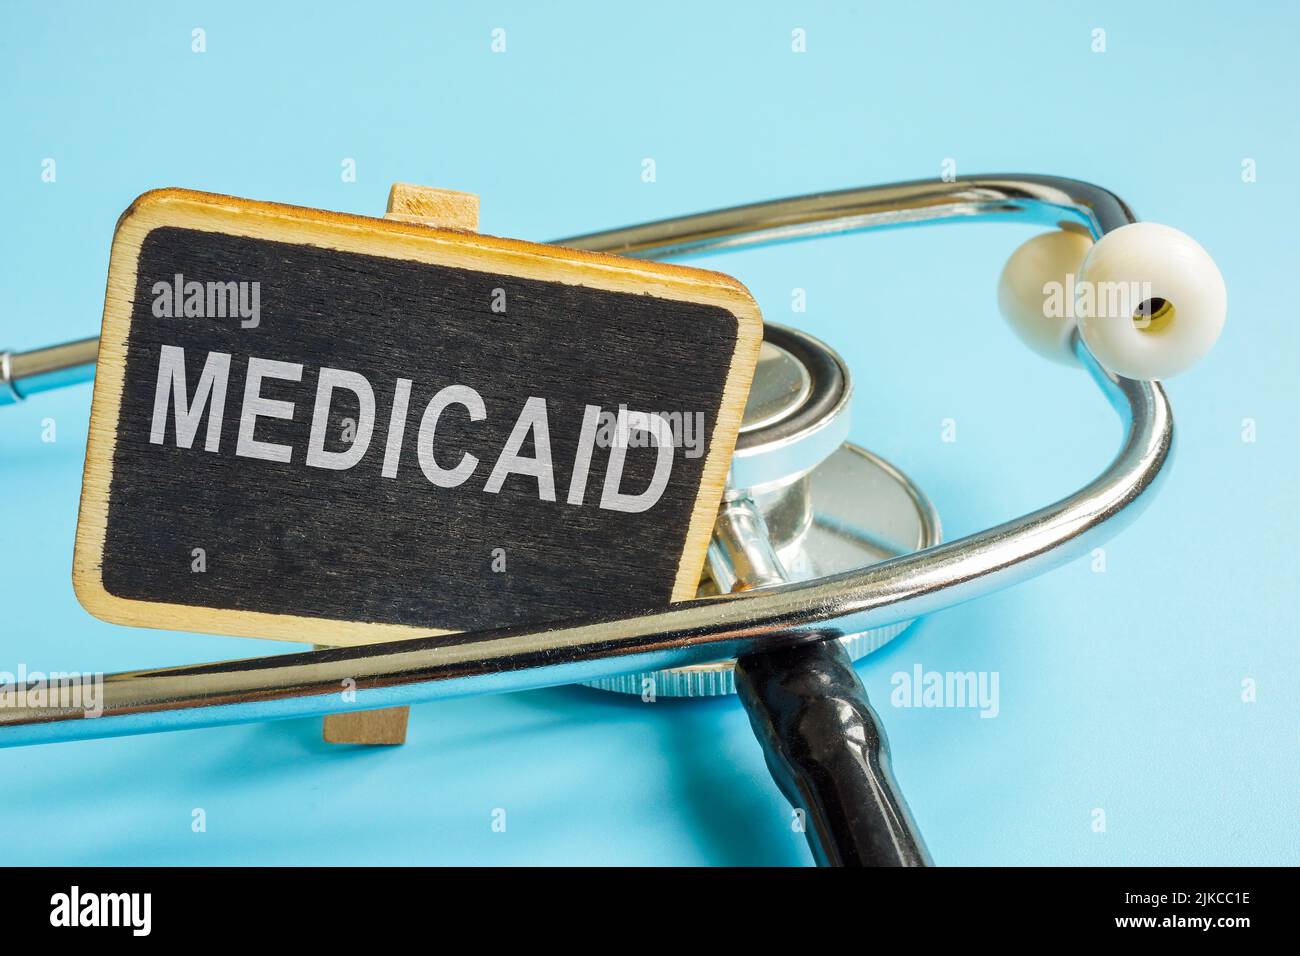 Placa con palabra Medicaid y un estetoscopio. Foto de stock